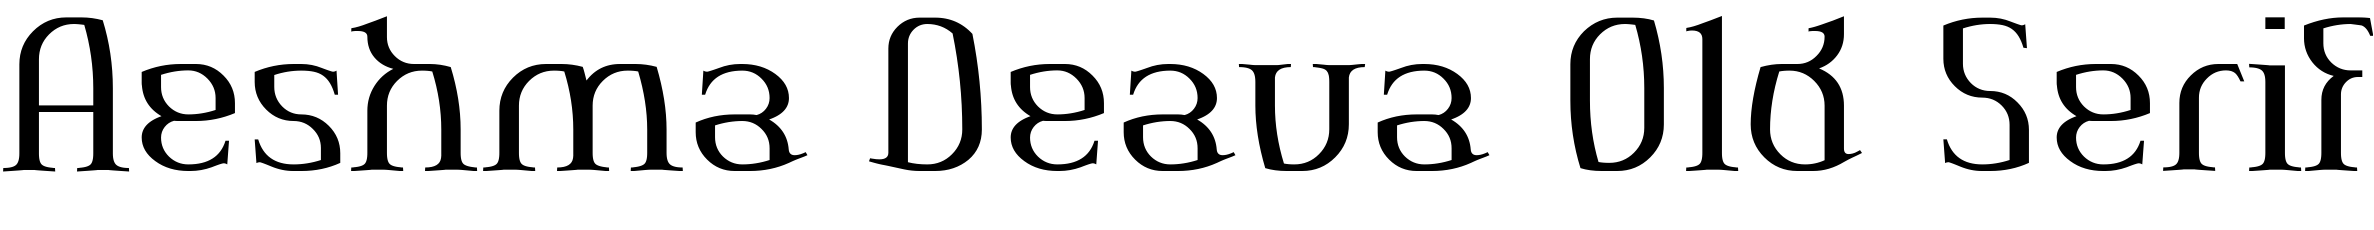 Aeshma Deava Old Serif